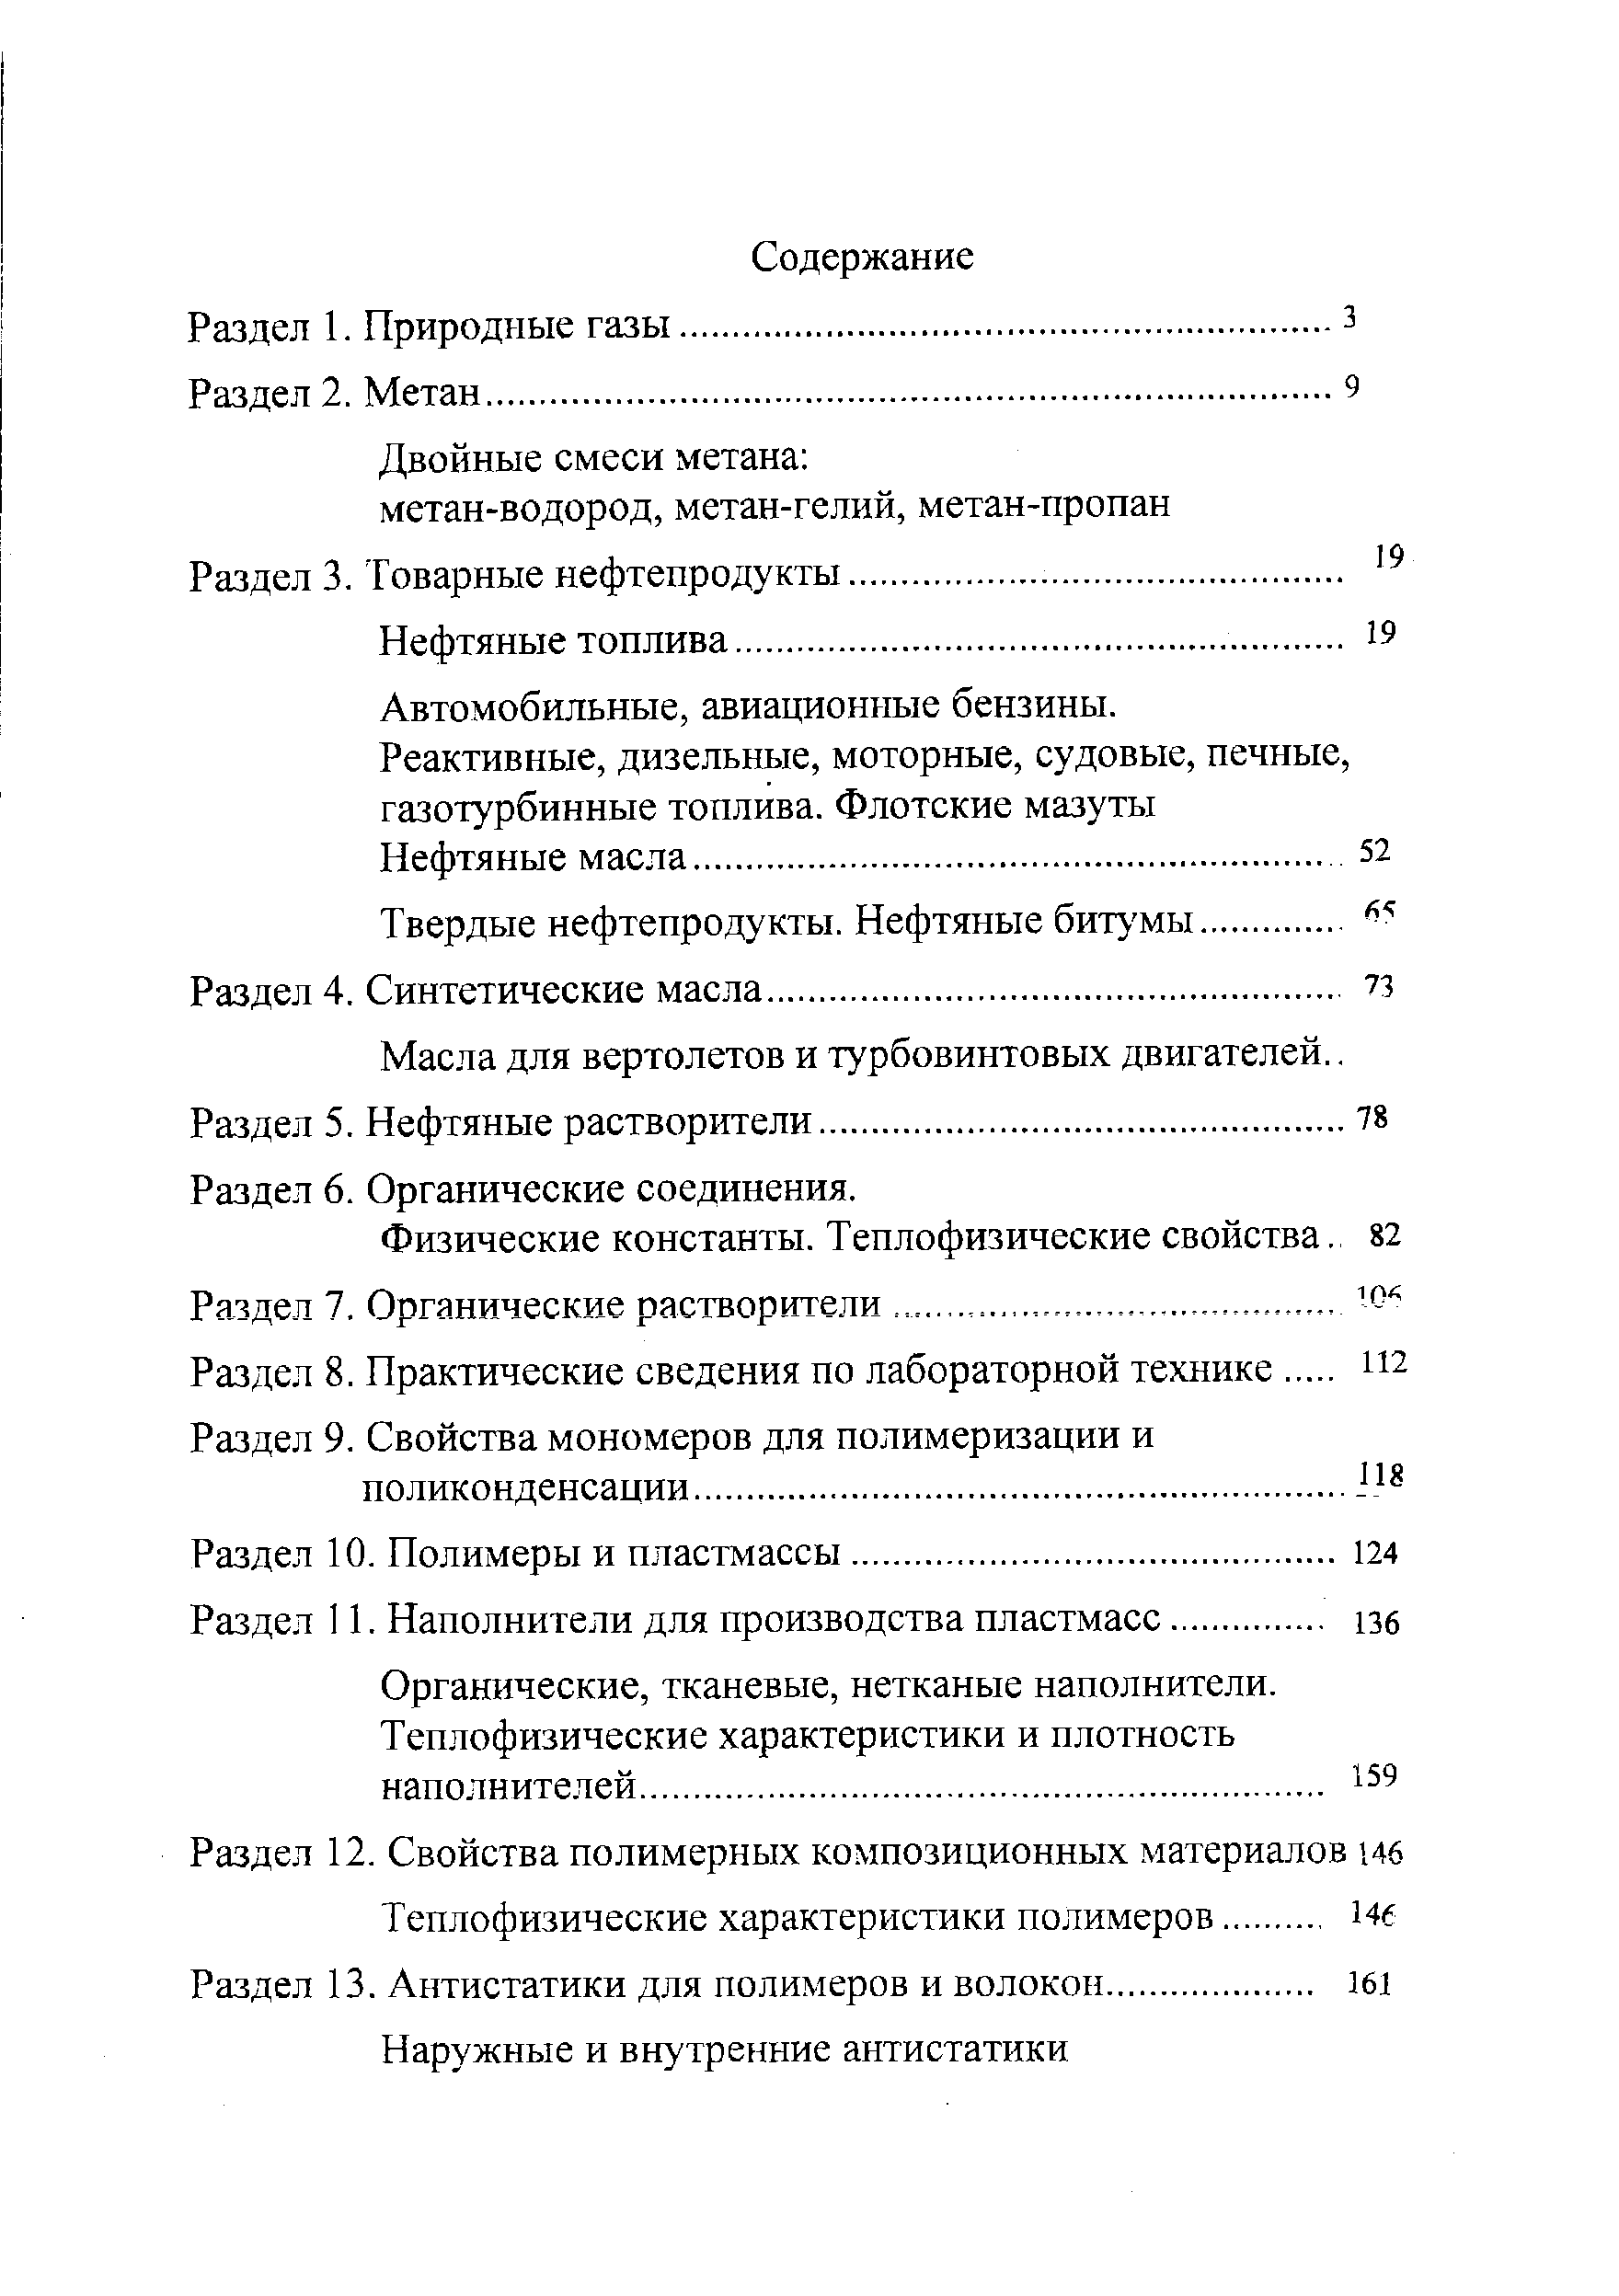 Раздел 8. Практические сведения по лабораторной технике.